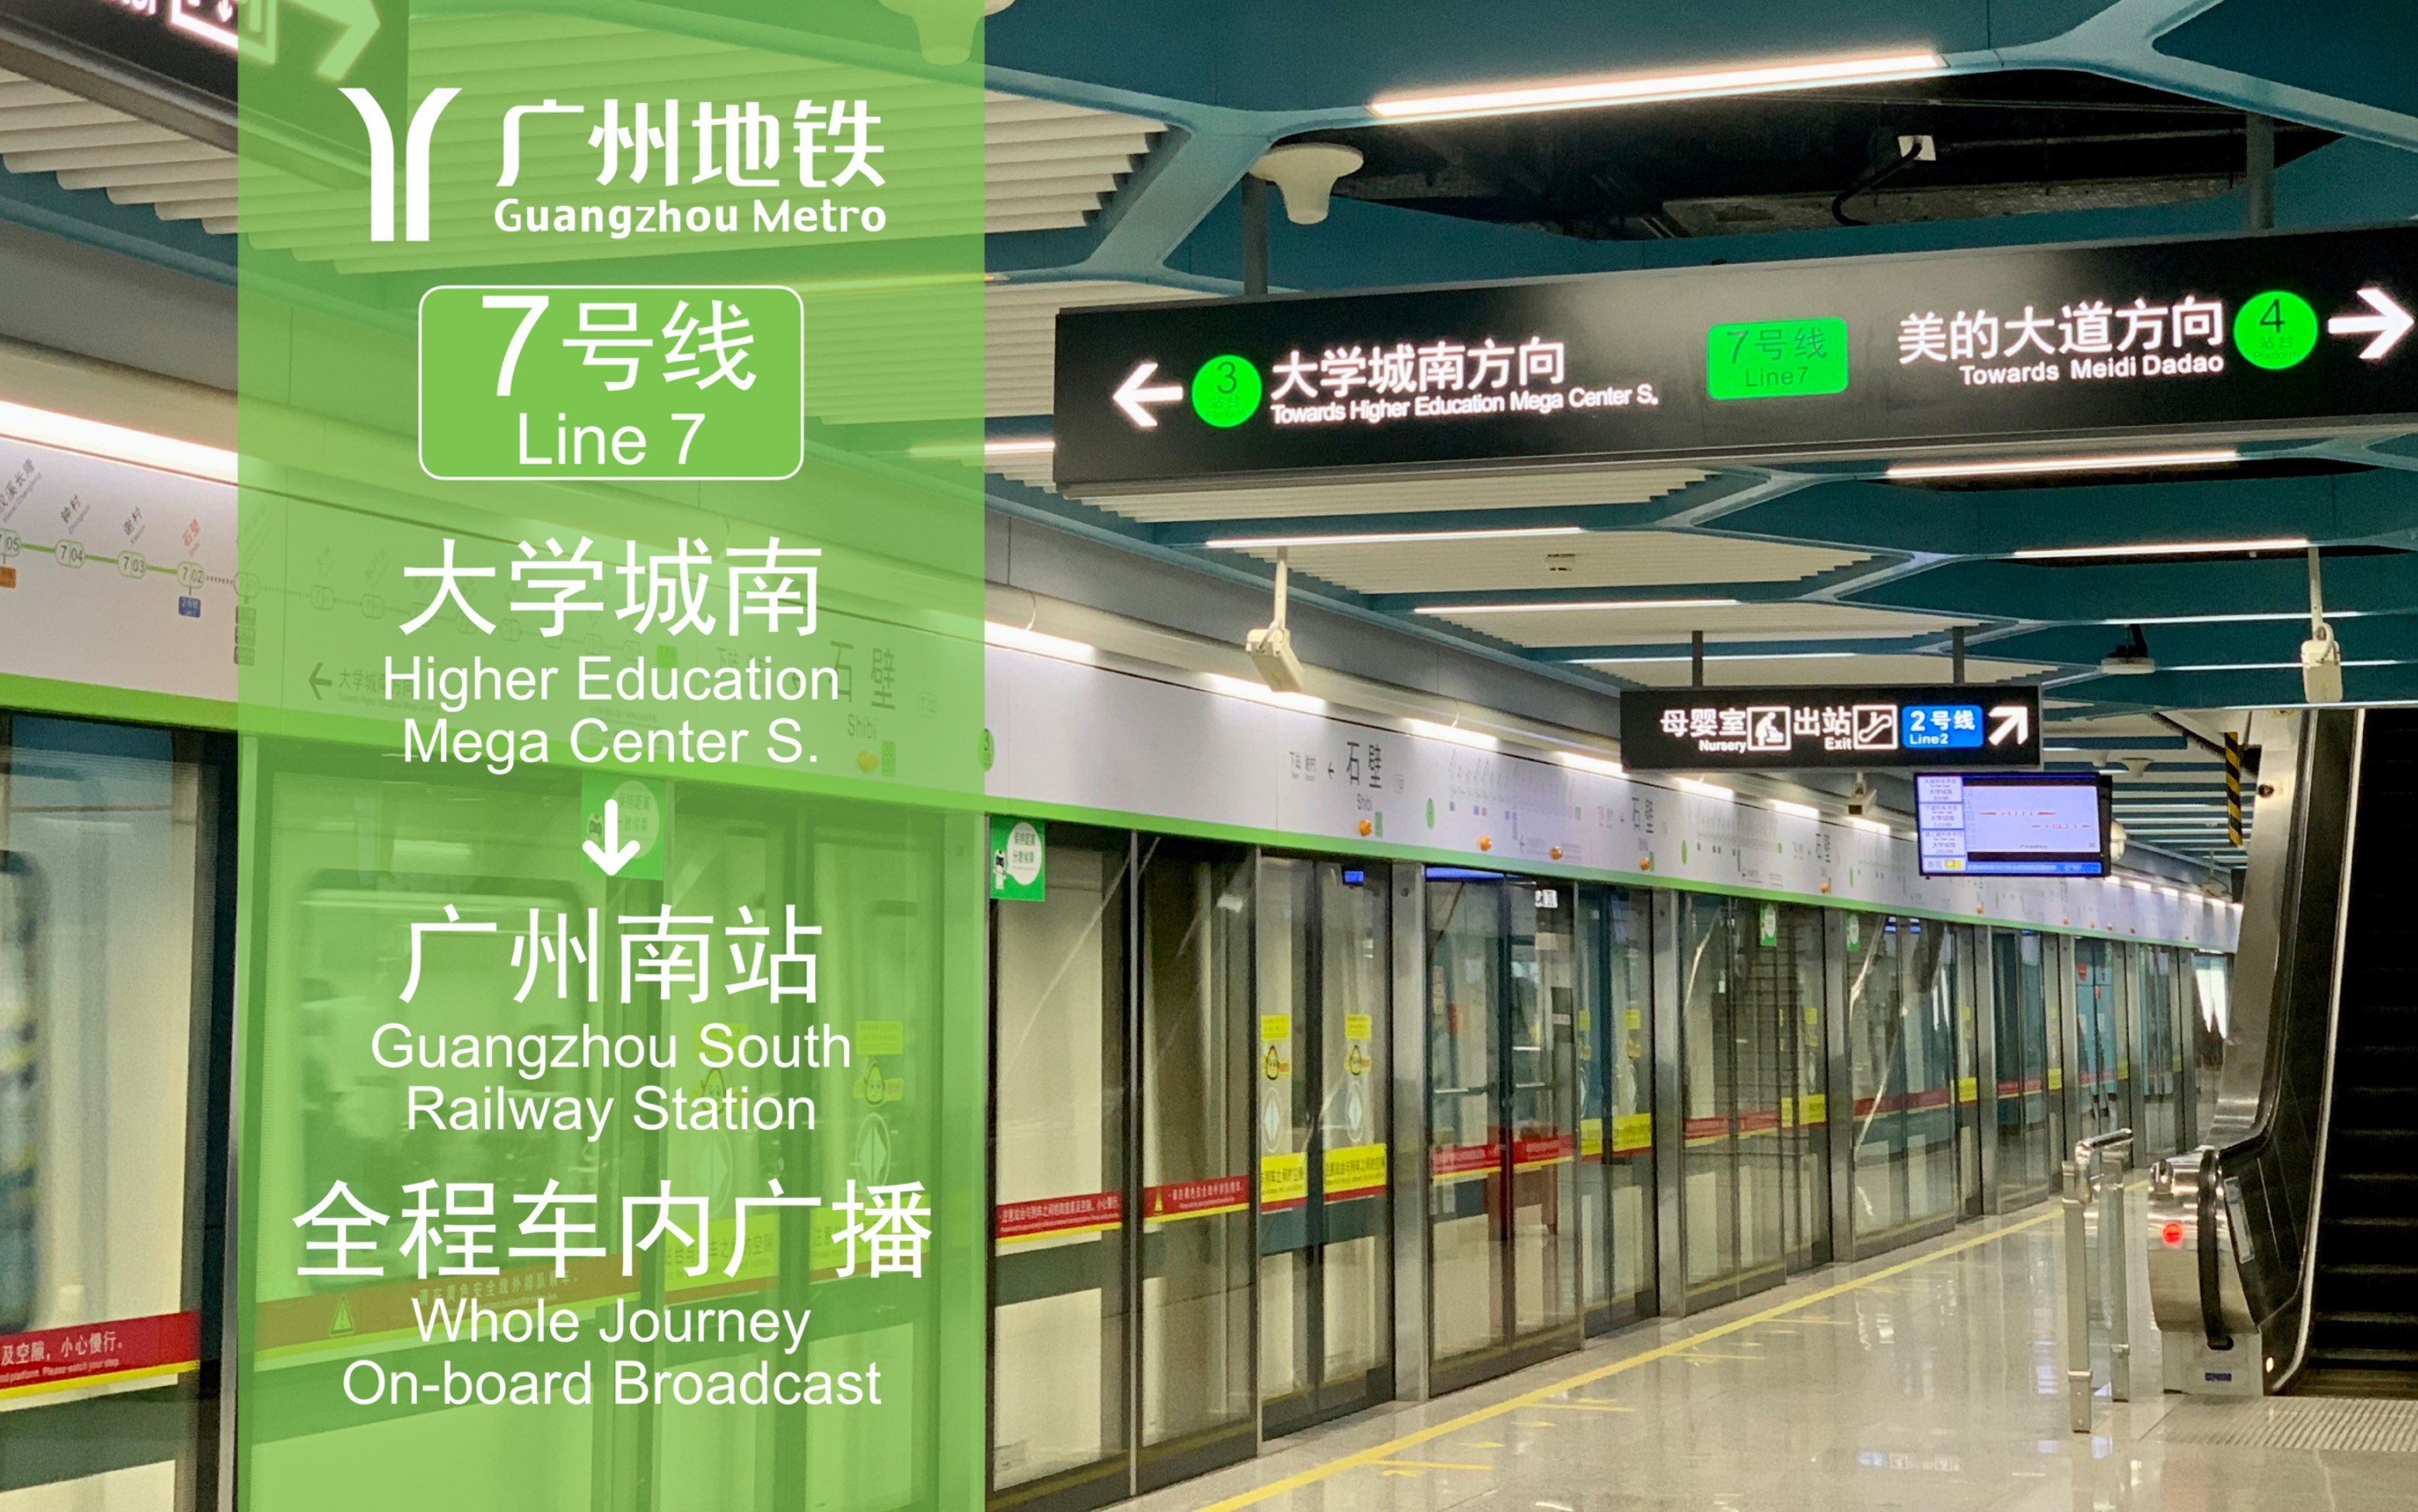 即将绝版广州地铁7号线大学城南广州南站全程车内广播